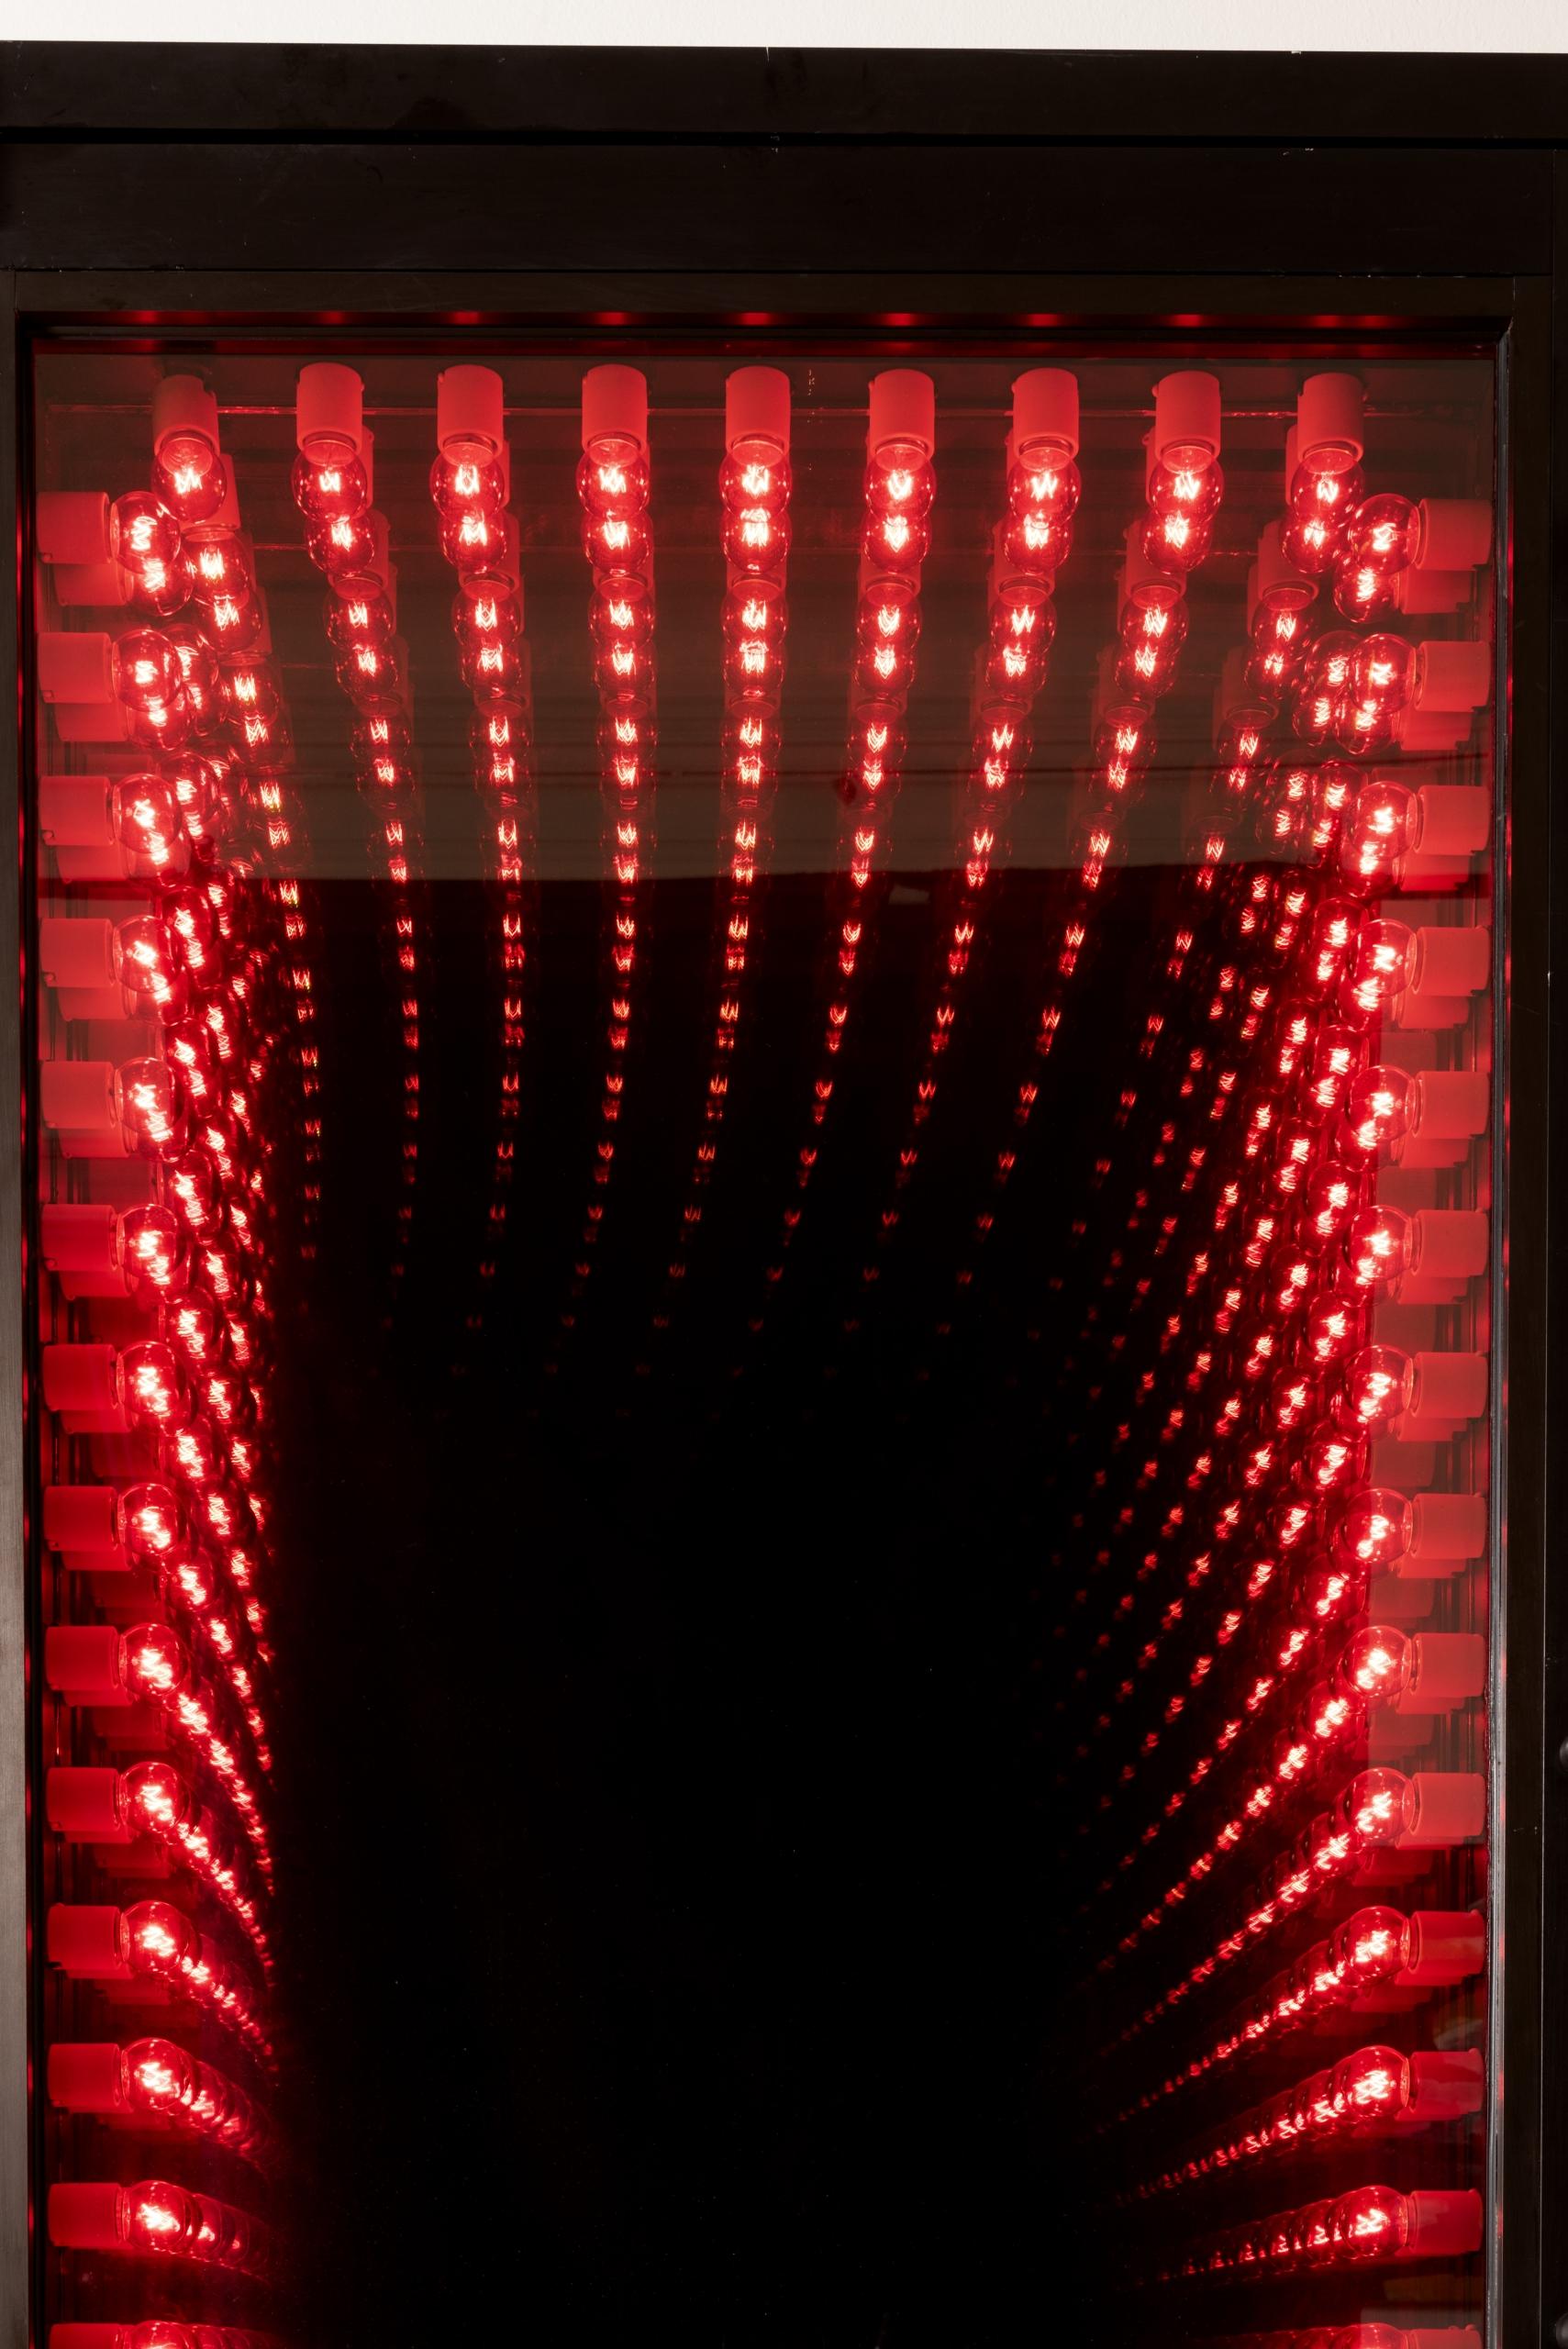 Porte, structure de métal en verre, ampoules, système électrique avec miroir et miroir sans tain, édition 1/3.

Provenance : Union Gallery, Londres

Collection particulière, Paris

Dimensions : H218xL100xP12cm